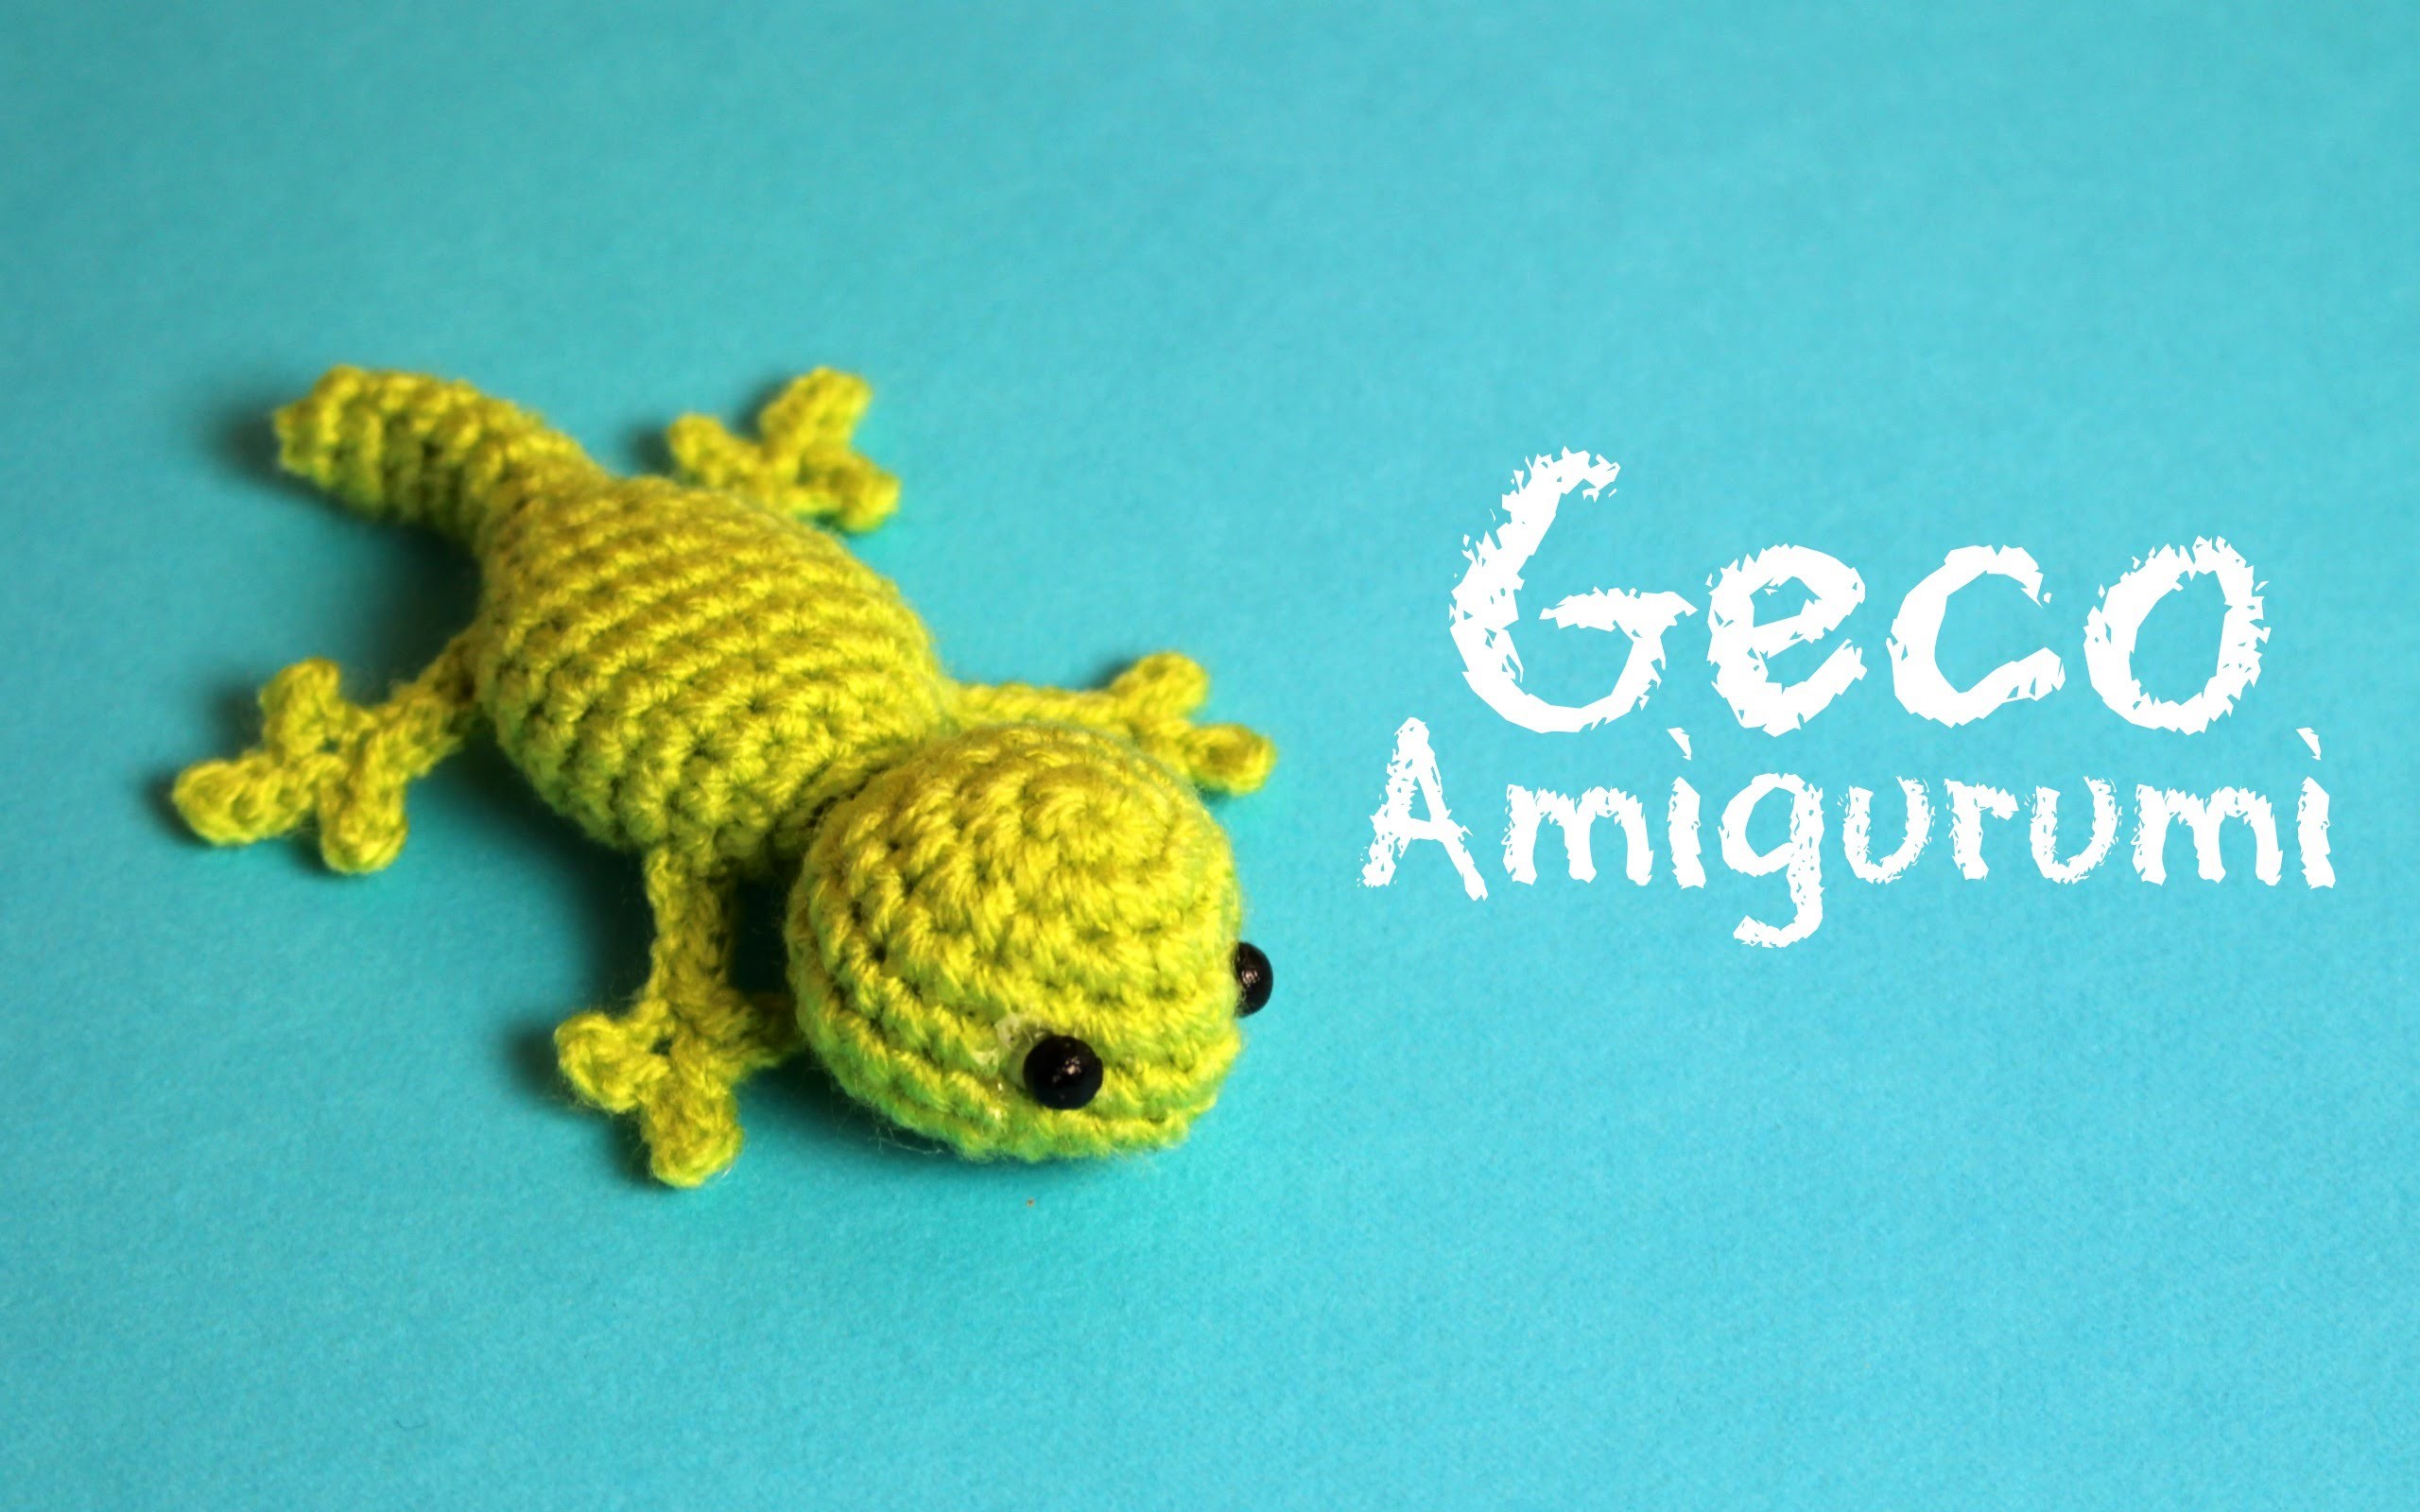 Geco Amigurumi | World of Amigurumi